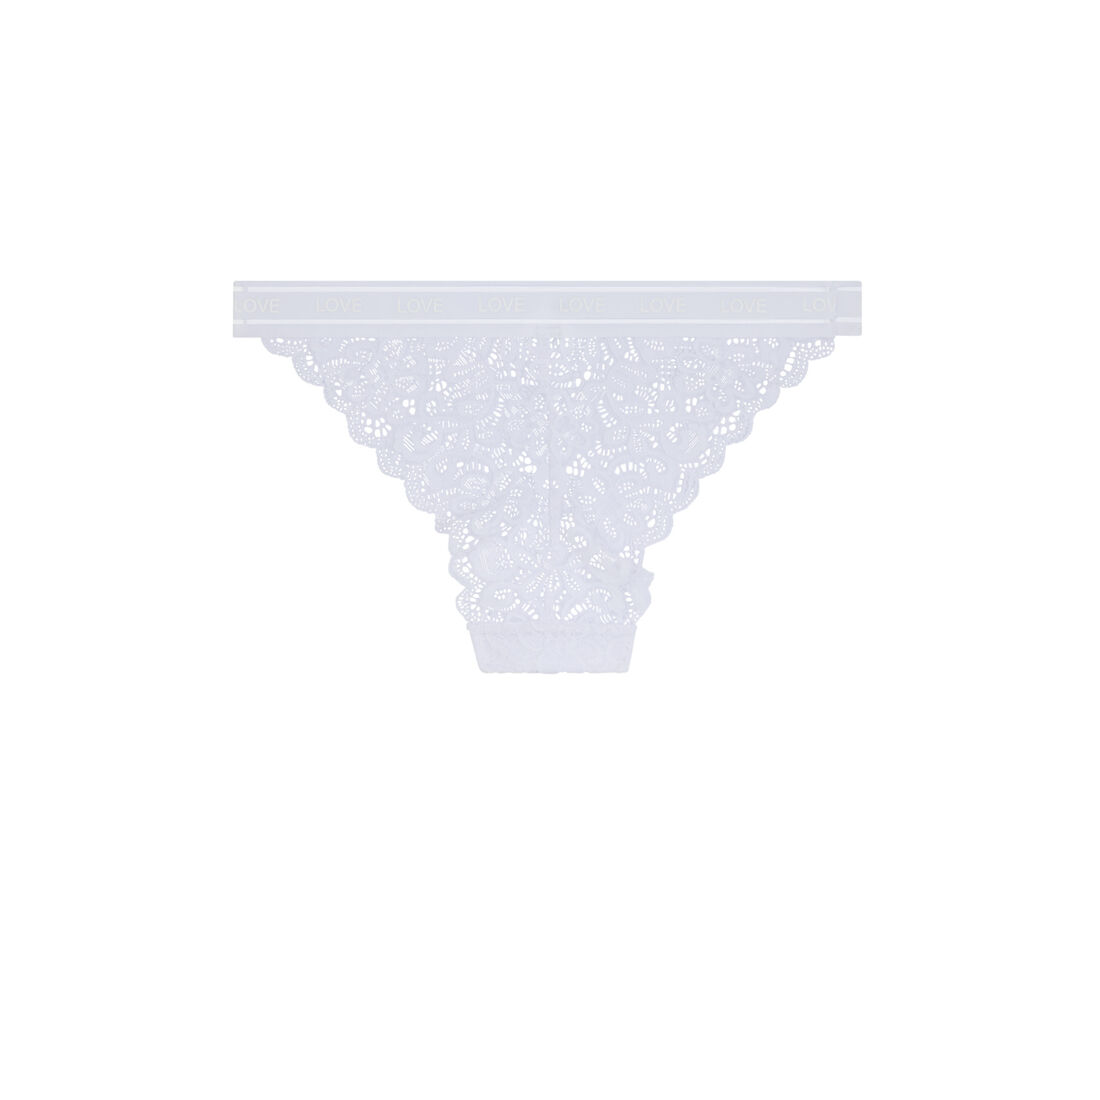 Lace briefs - white;